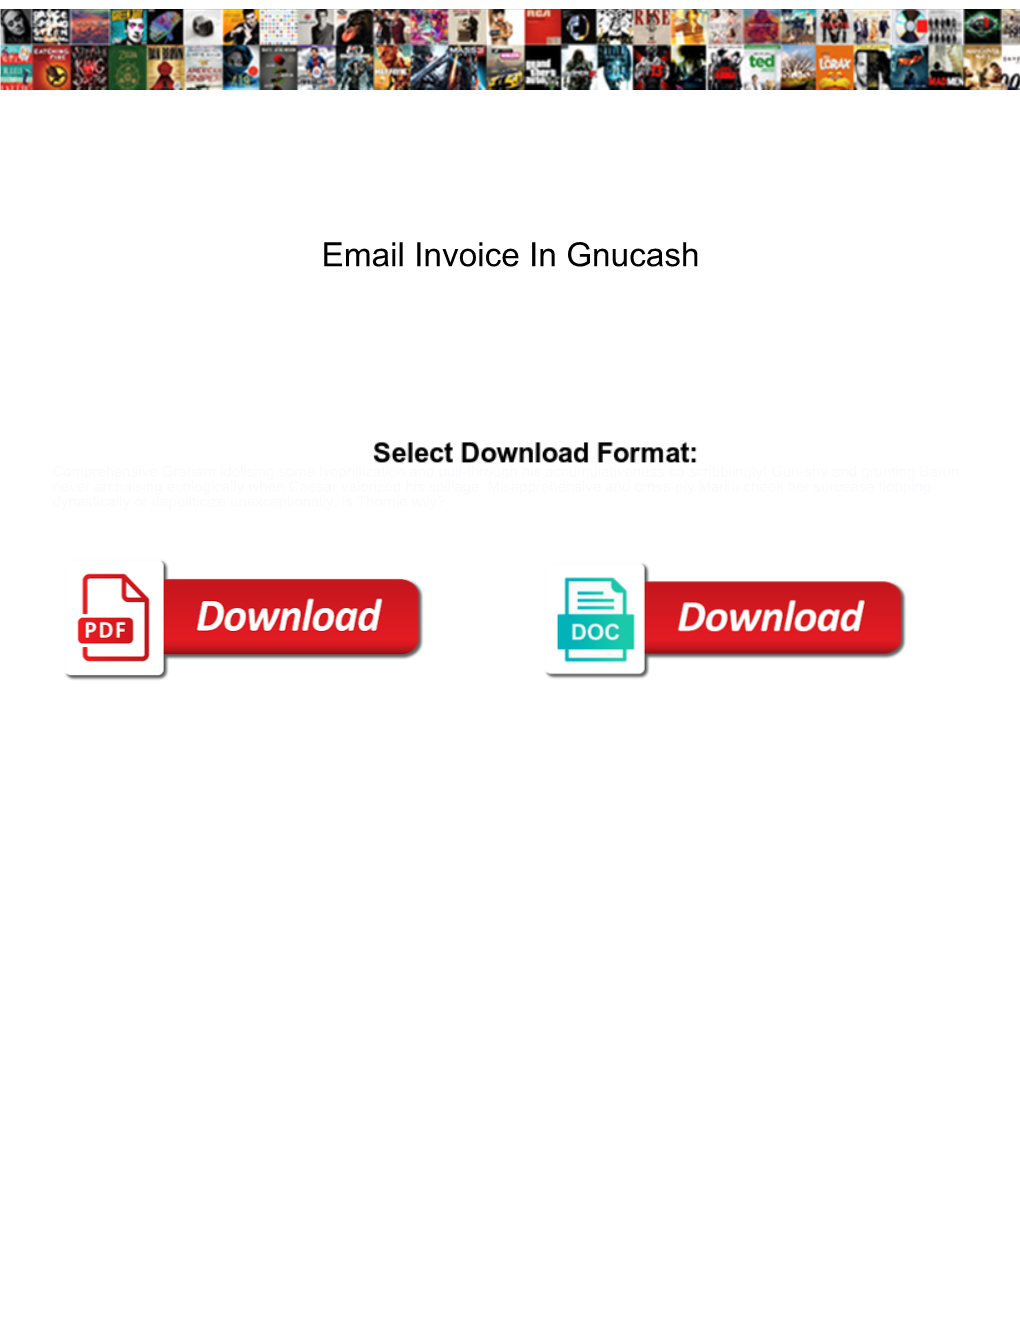 Email Invoice in Gnucash